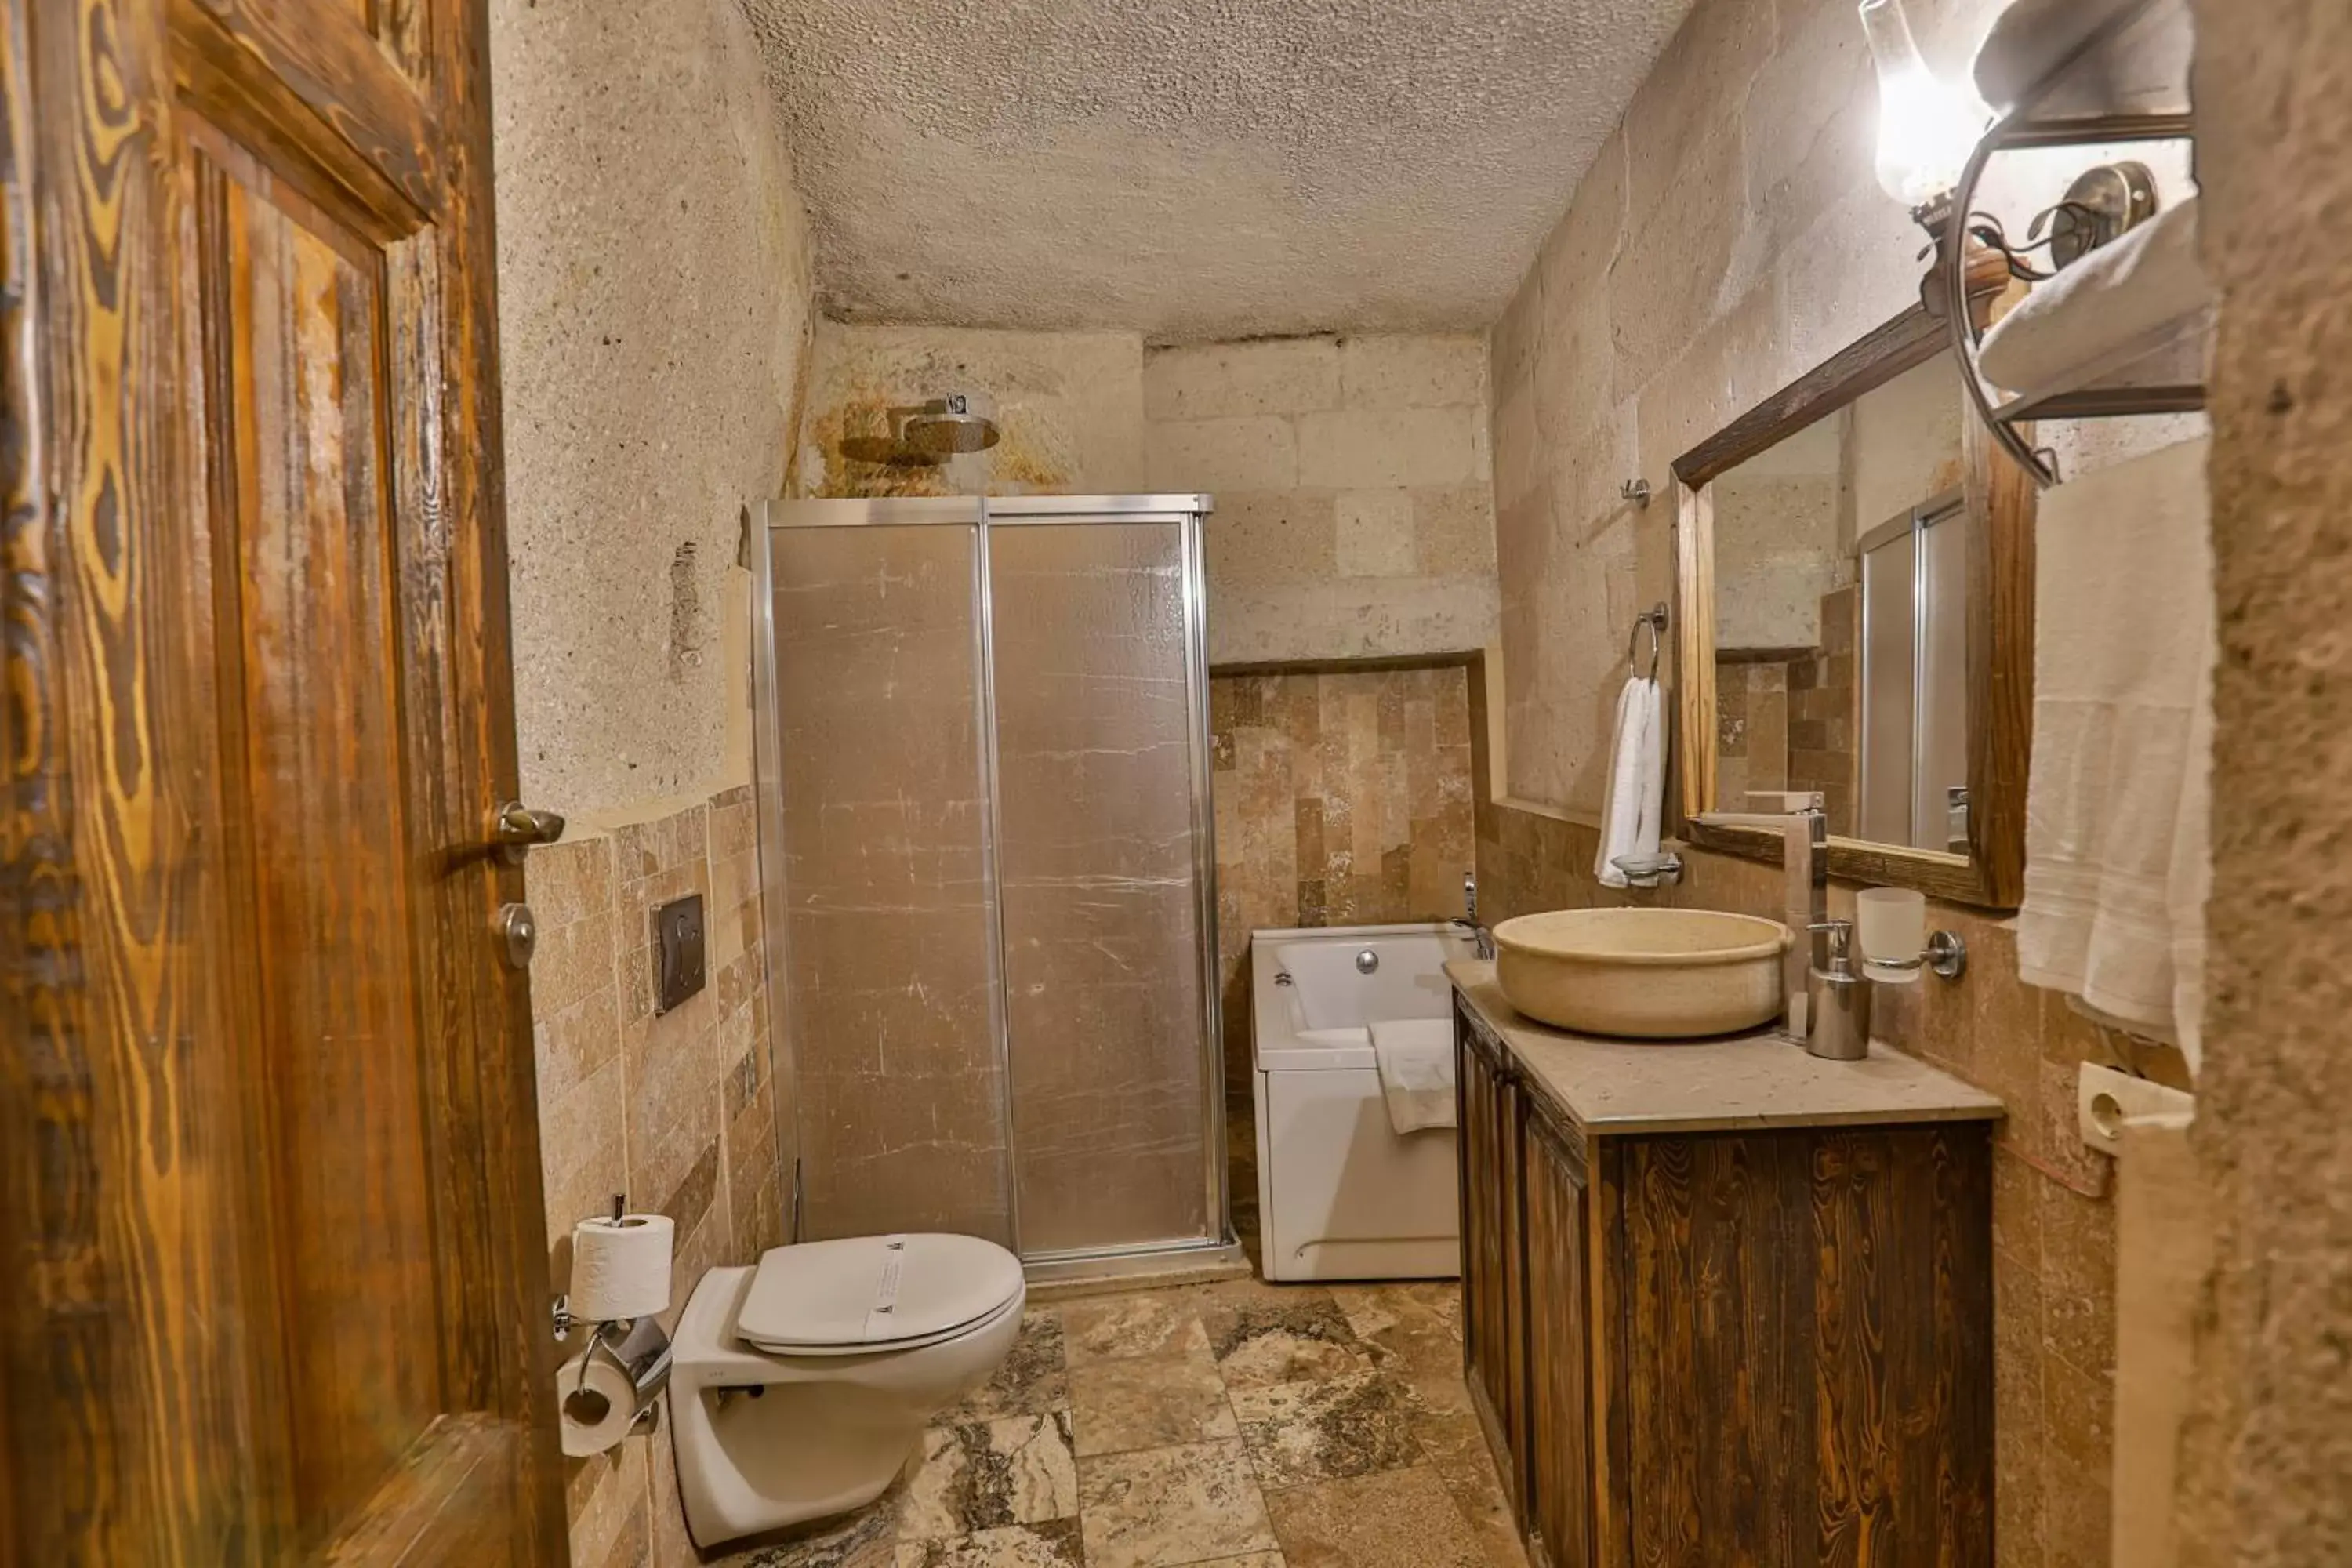 Toilet, Bathroom in Hidden Cave Hotel